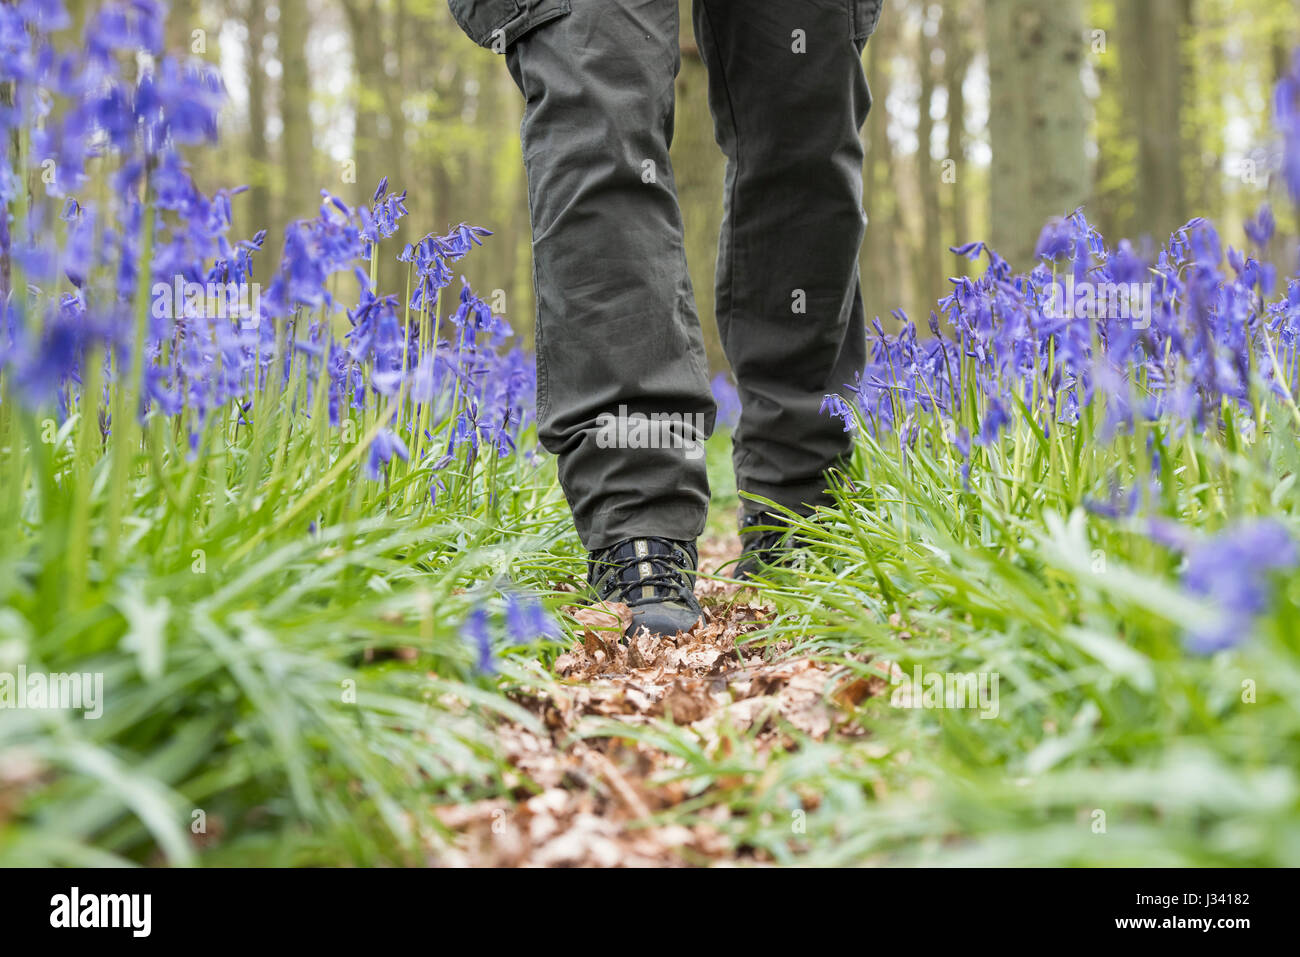 Homme marchant à travers un bois bluebell portant des chaussures de randonnée. L'Oxfordshire. UK. Selective focus Banque D'Images